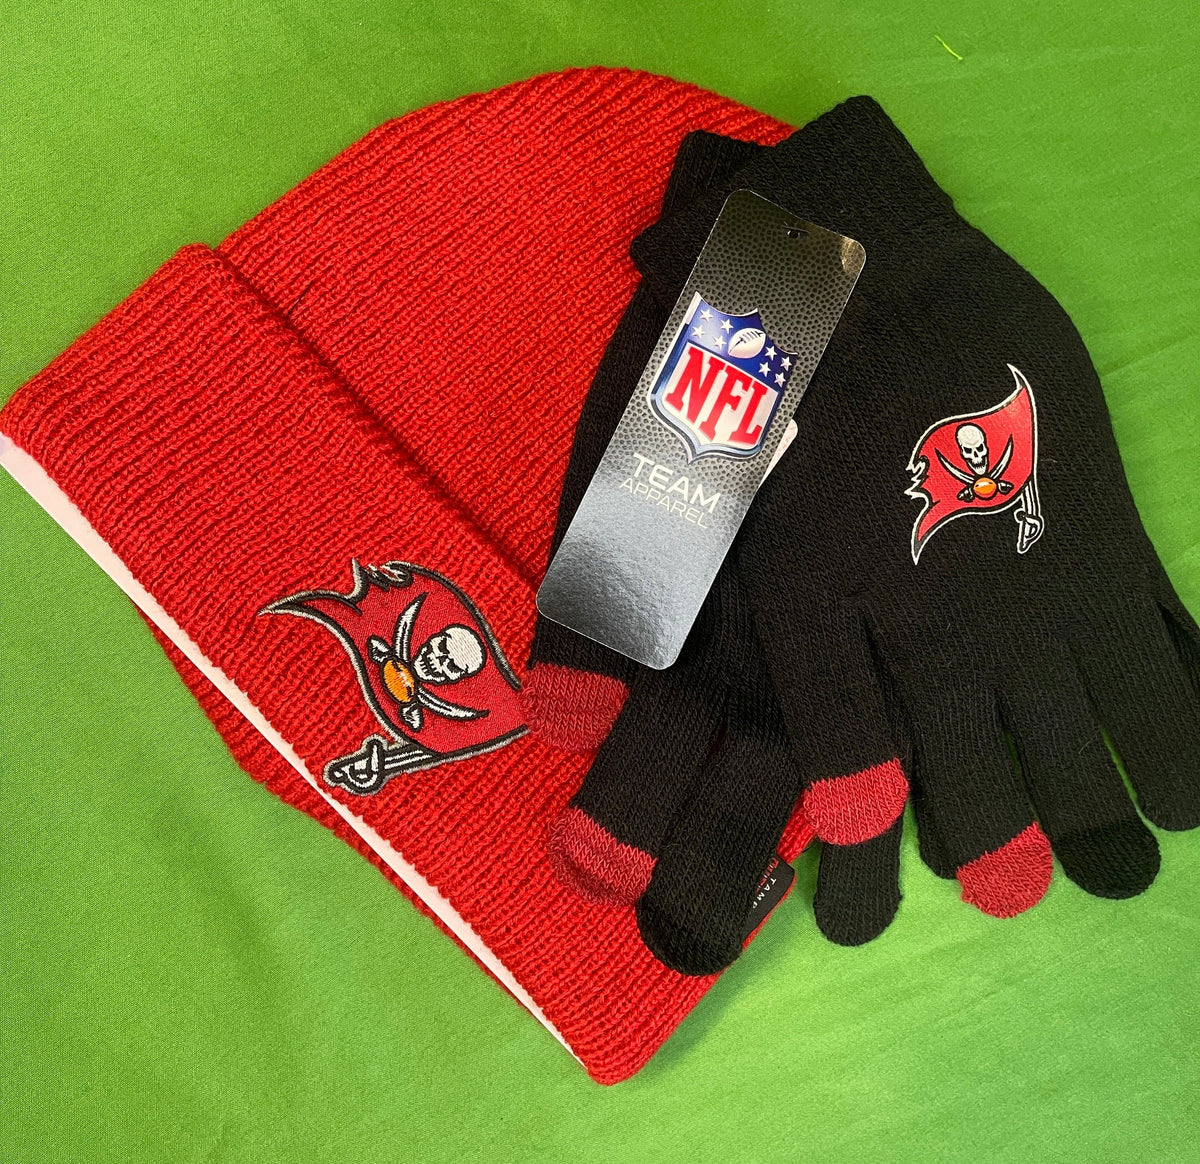 NFL Tampa Bay Buccaneers Woolly Hat & Gloves Set OSFM NWT